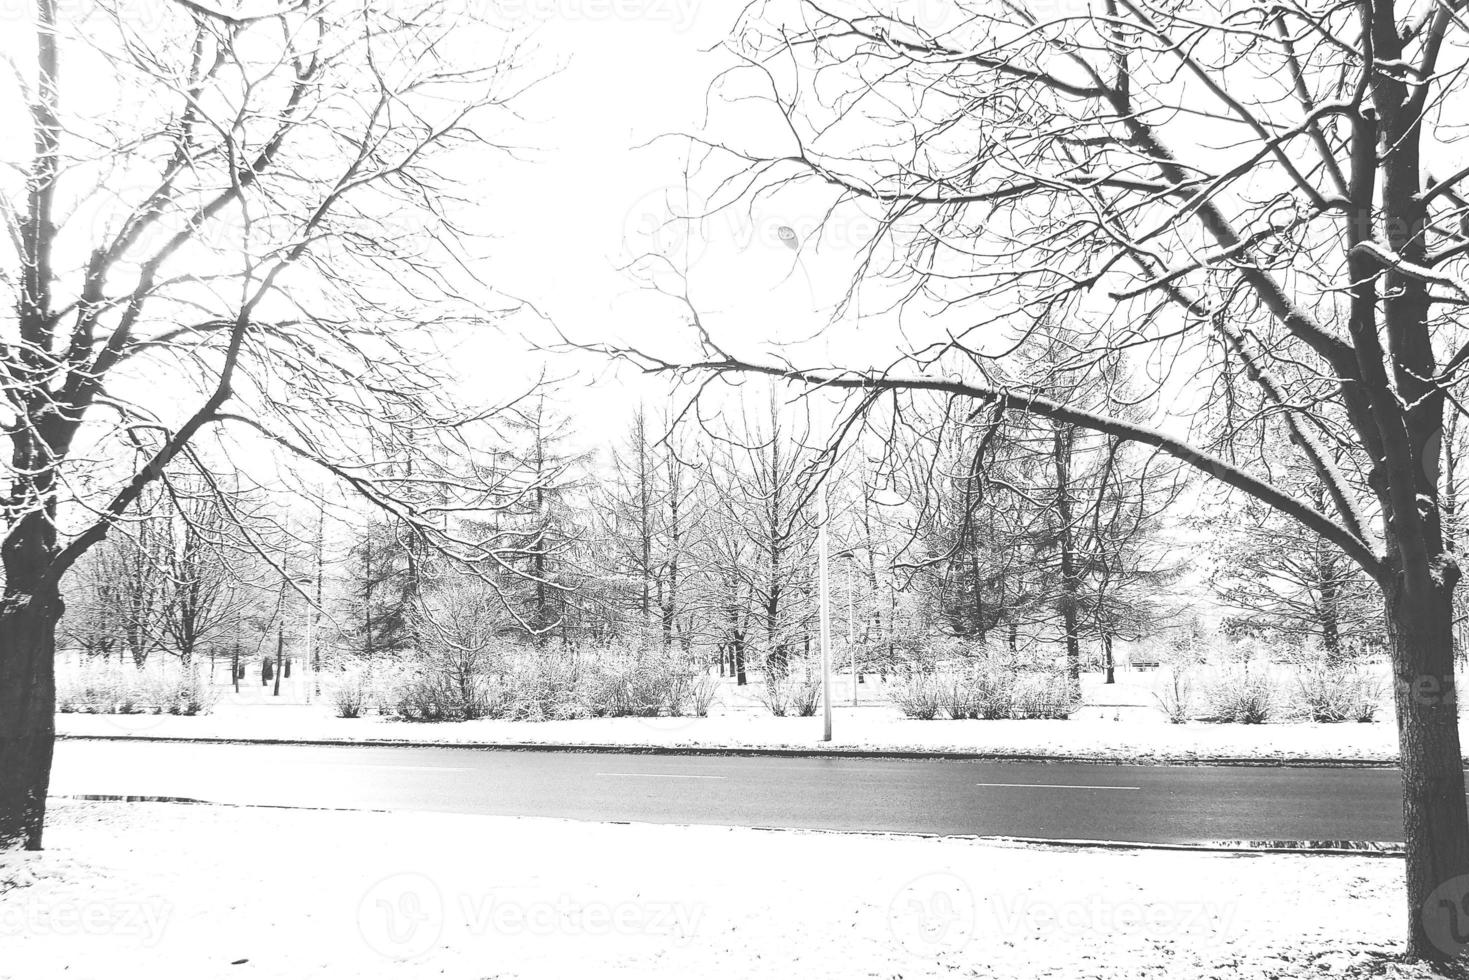 Winter Landschaft mit frisch Schnee und Bäume foto